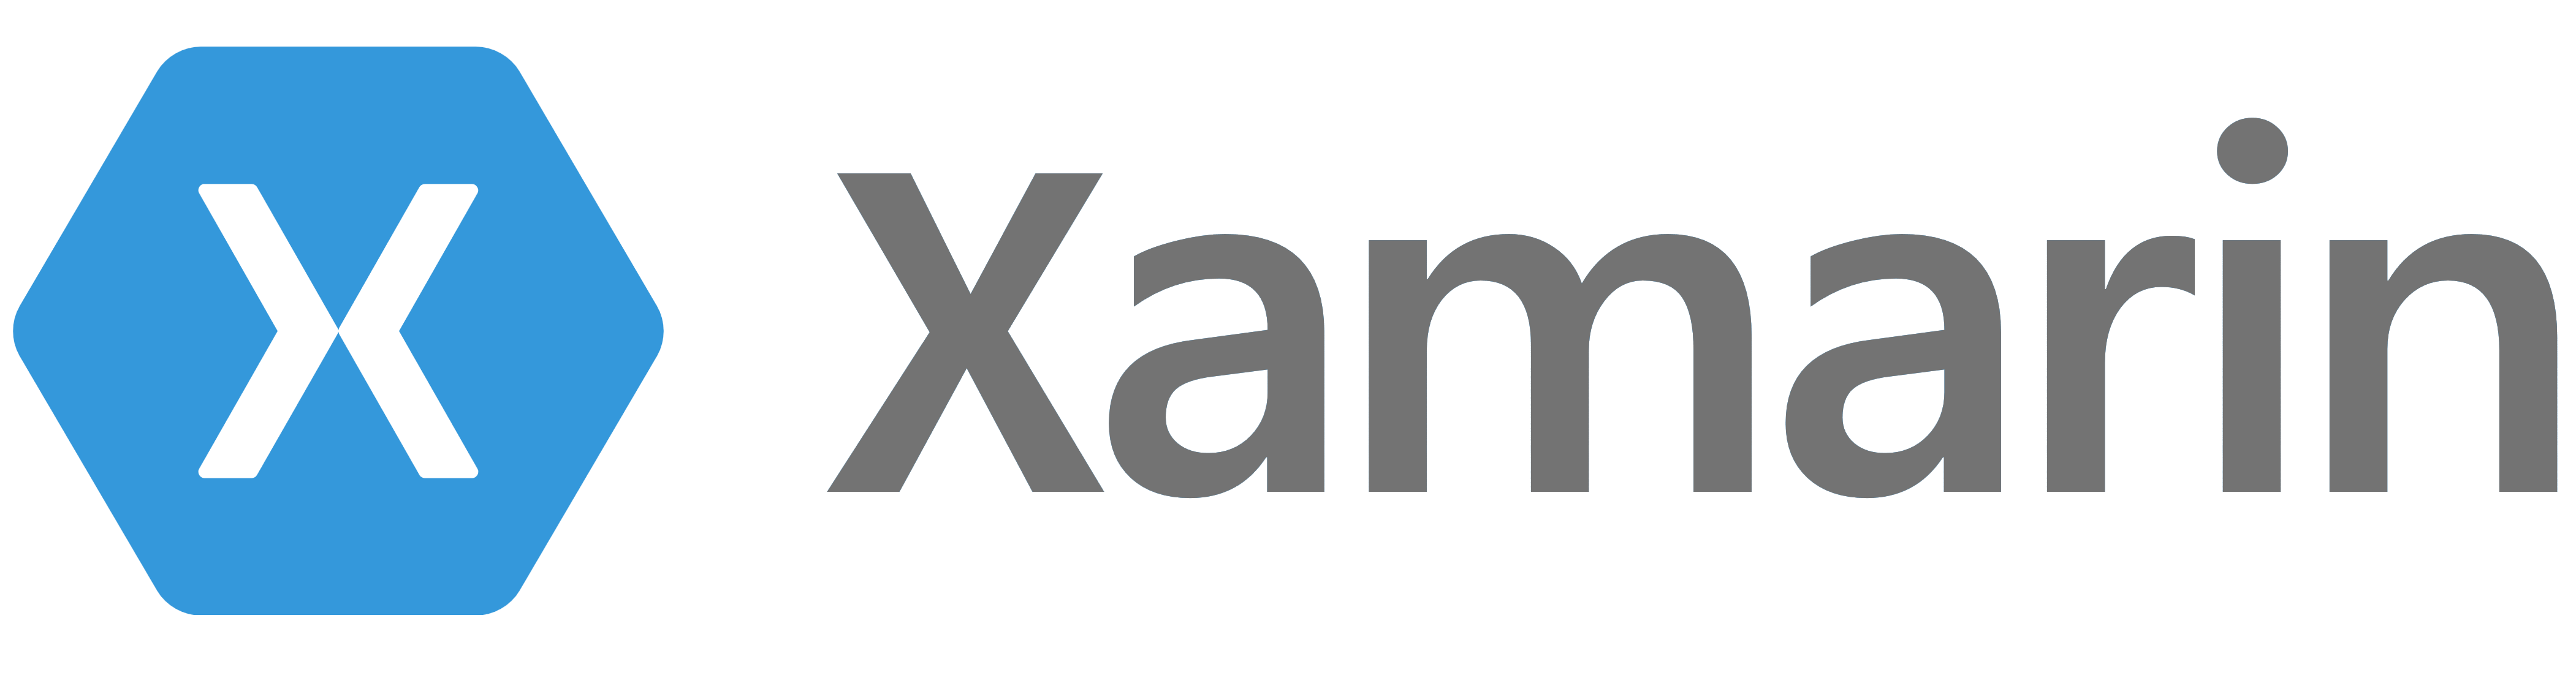 Xamarin_logo_symbol